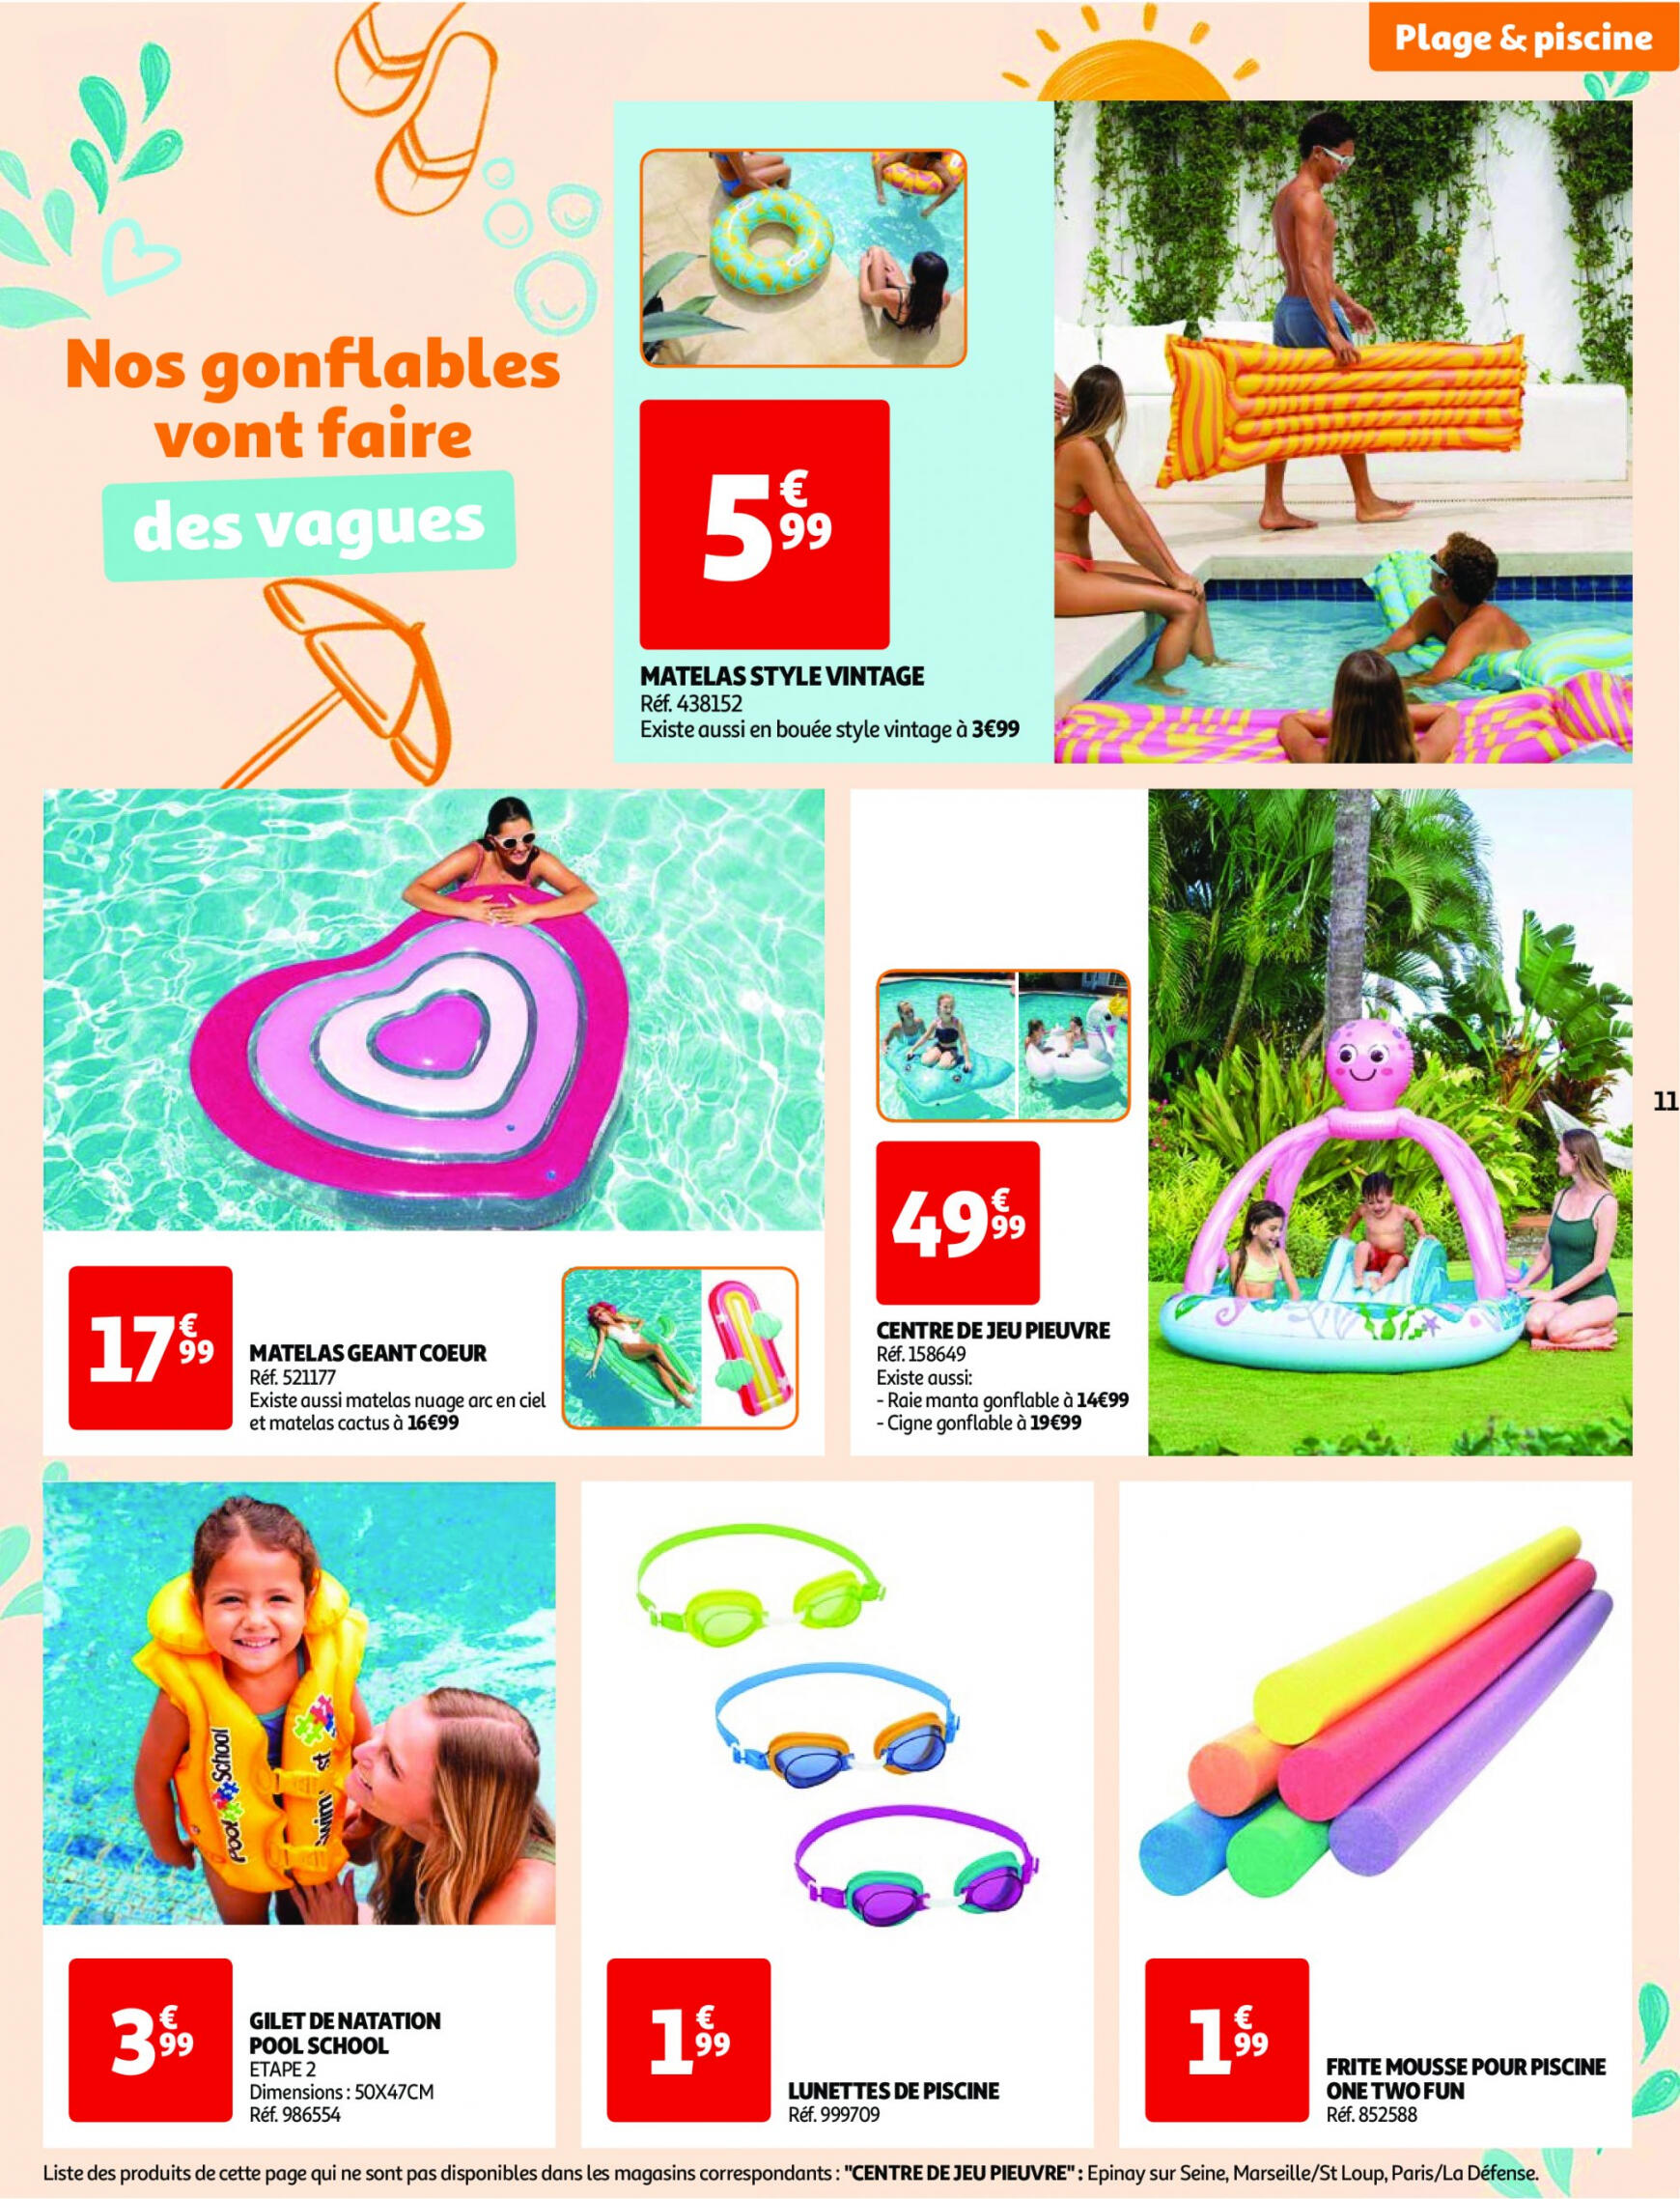 auchan - Auchan - Nos exclusivités Summer pour s'amuser tout l'été folder huidig 14.05. - 15.06. - page: 11